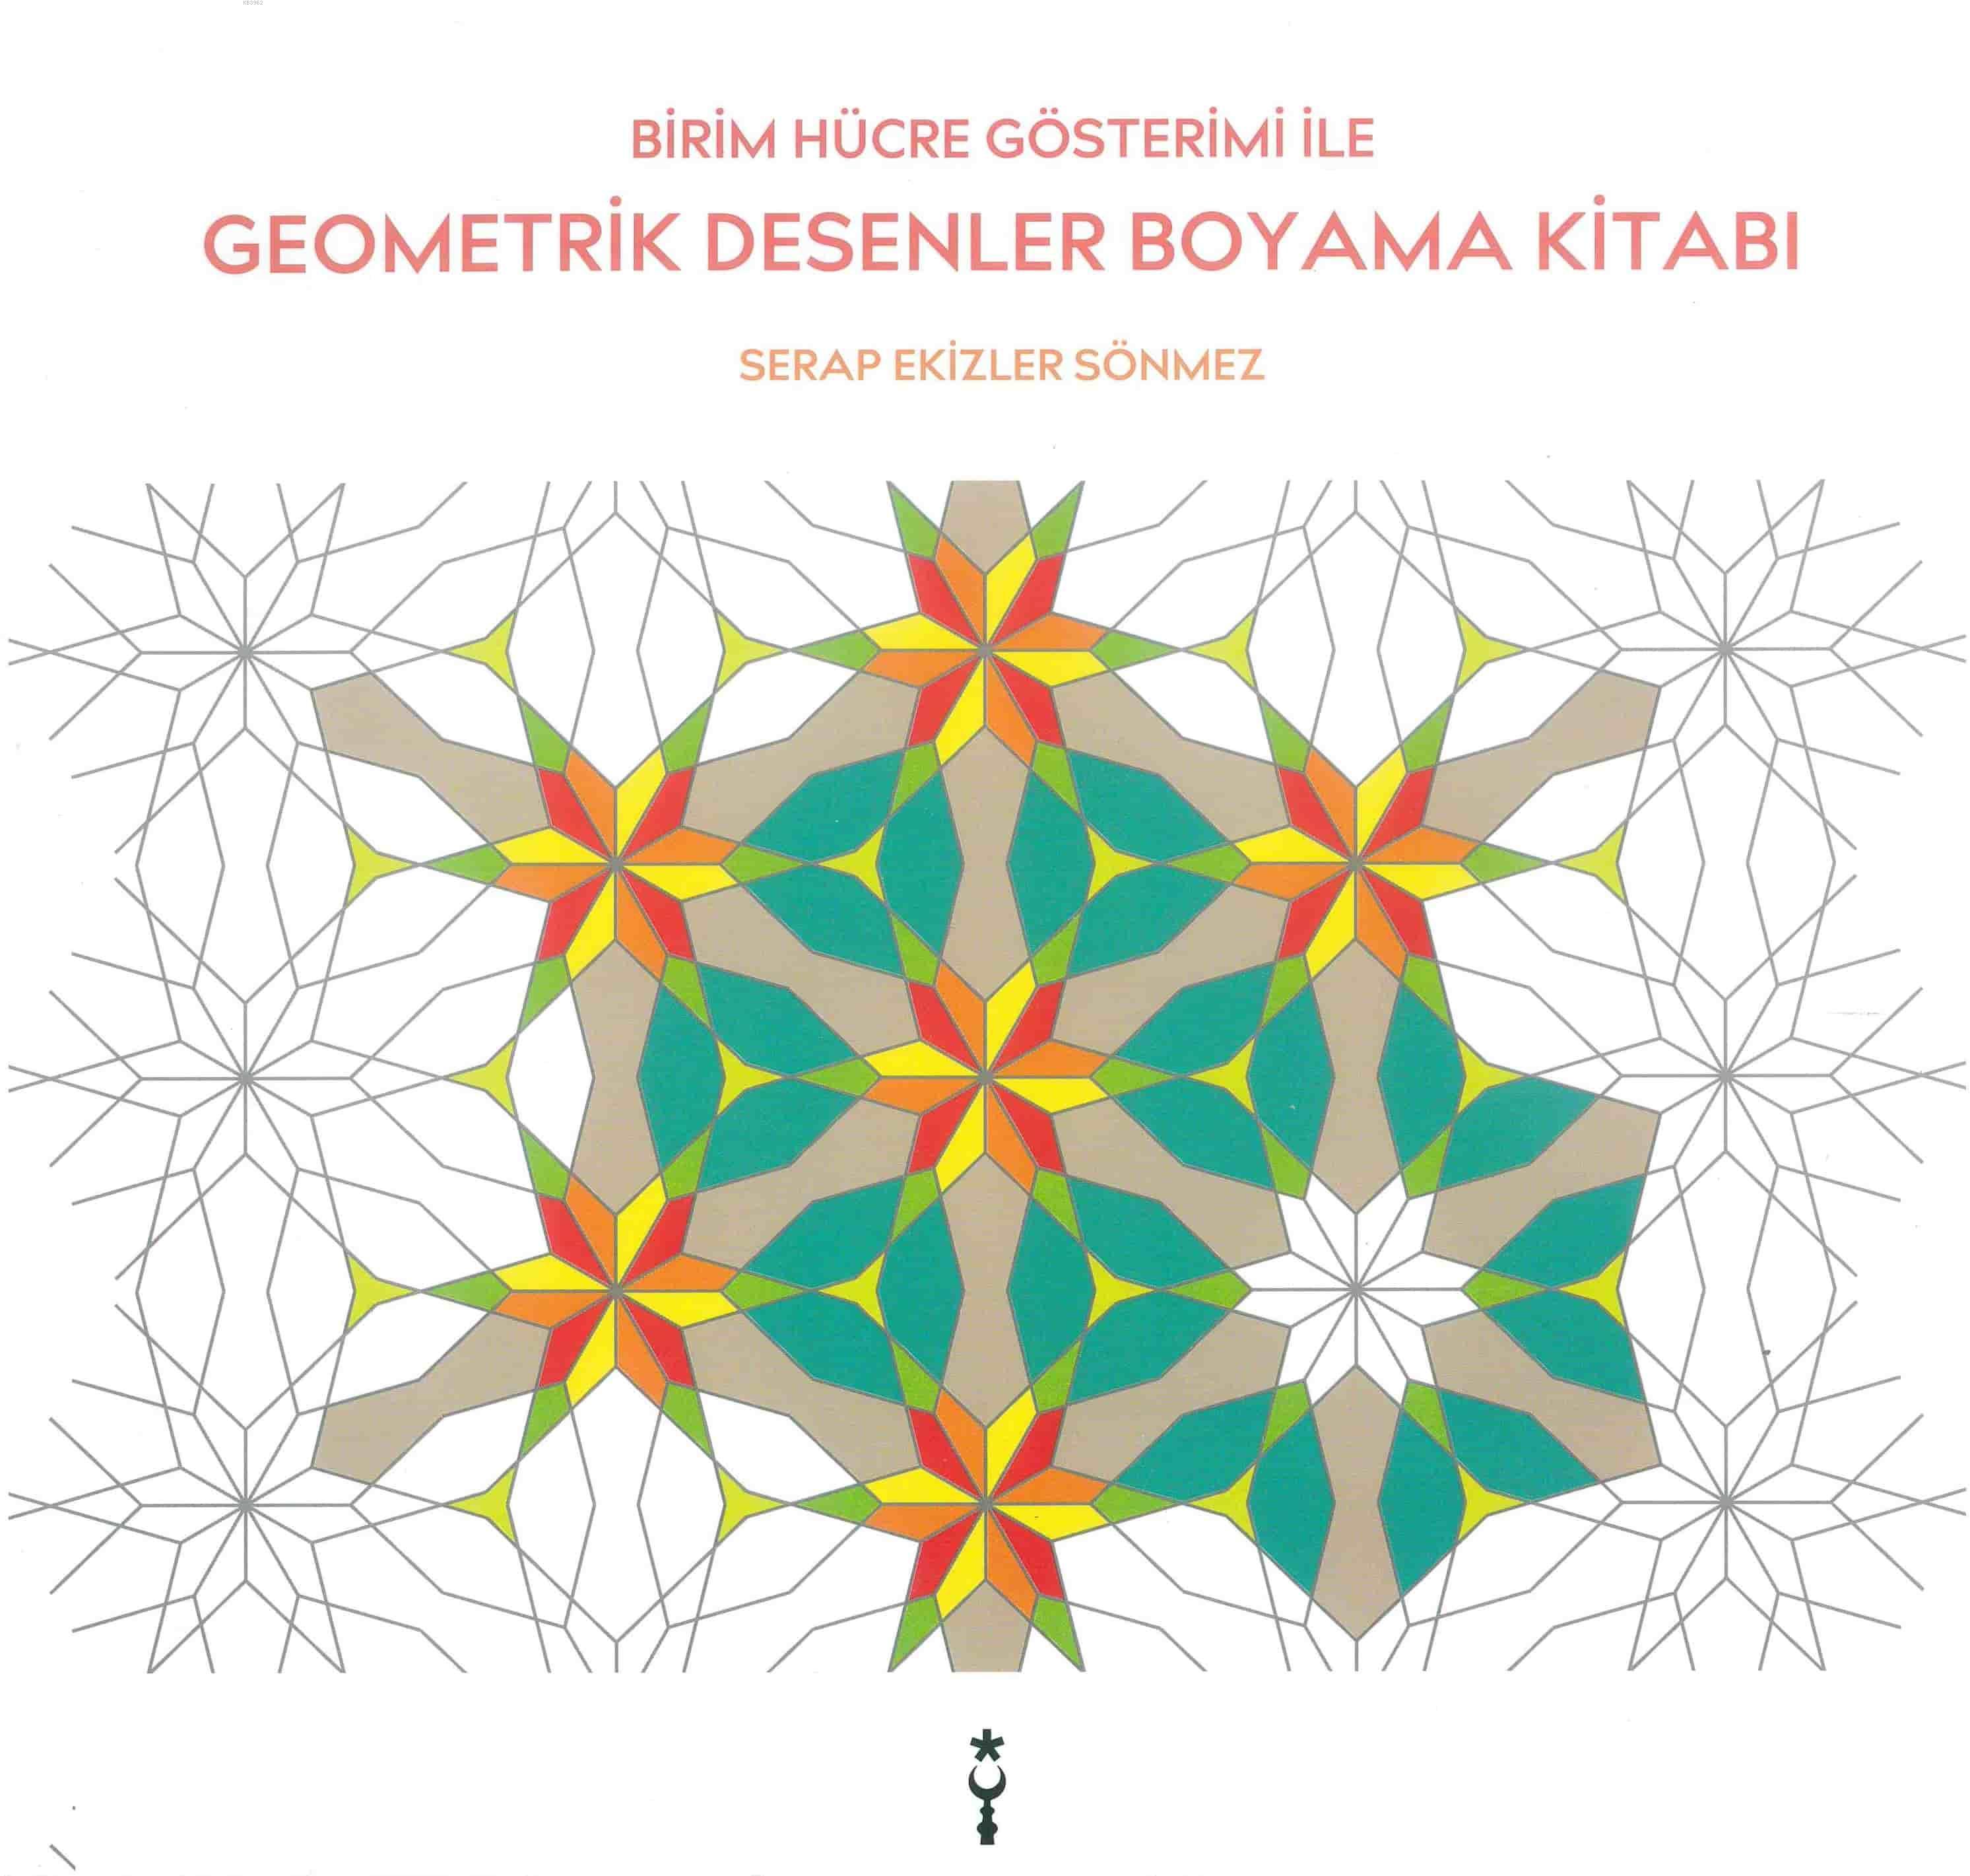 Geometrik Desenler Boyama Kitabı; Birim Hücre Gösterimi ile